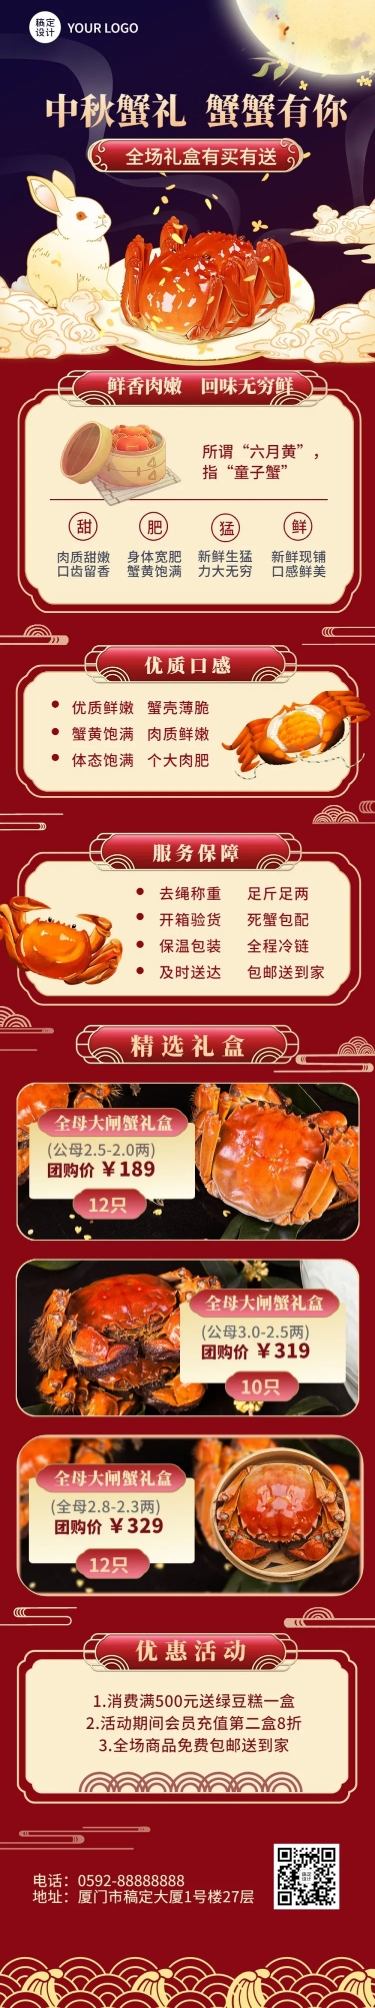 中秋节餐饮美食大闸蟹促销活动文章长图